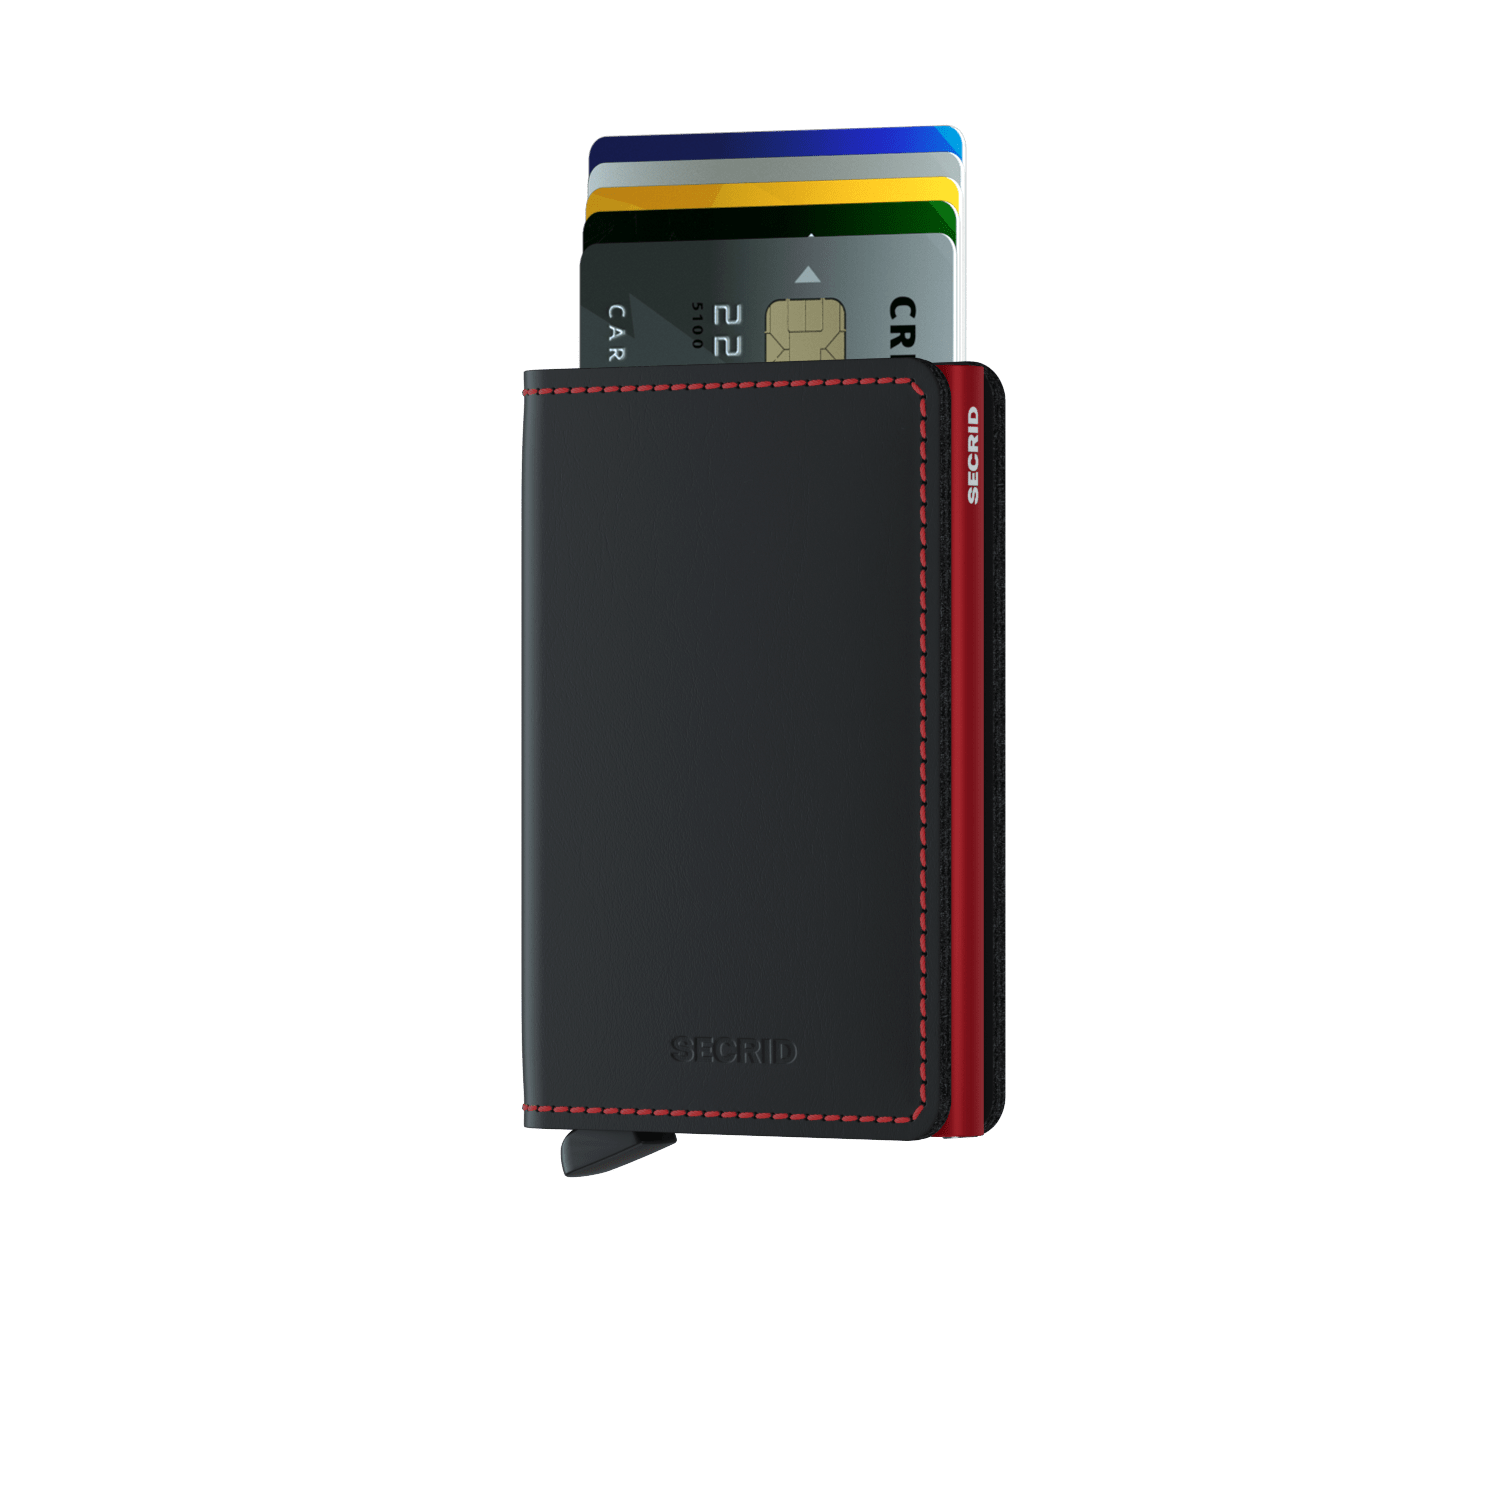 Slimwallet Matte Black/Red RFID Secure